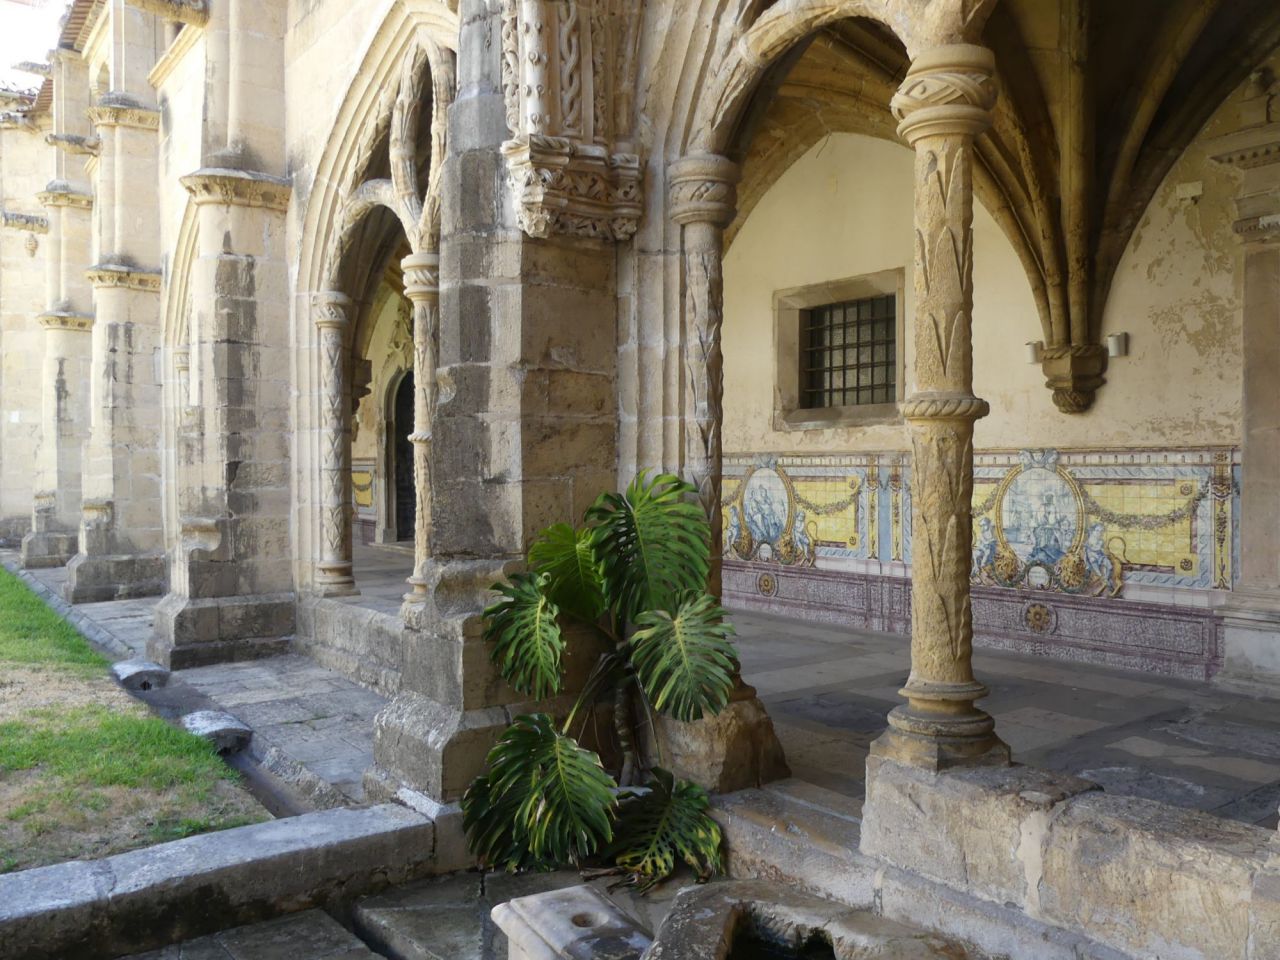 Detalle del claustro del Monasterio de Santa Cruz, donde están enterrados los dos primeros reyes del reino de Portugal, d. Afonso I y d, Sancho I